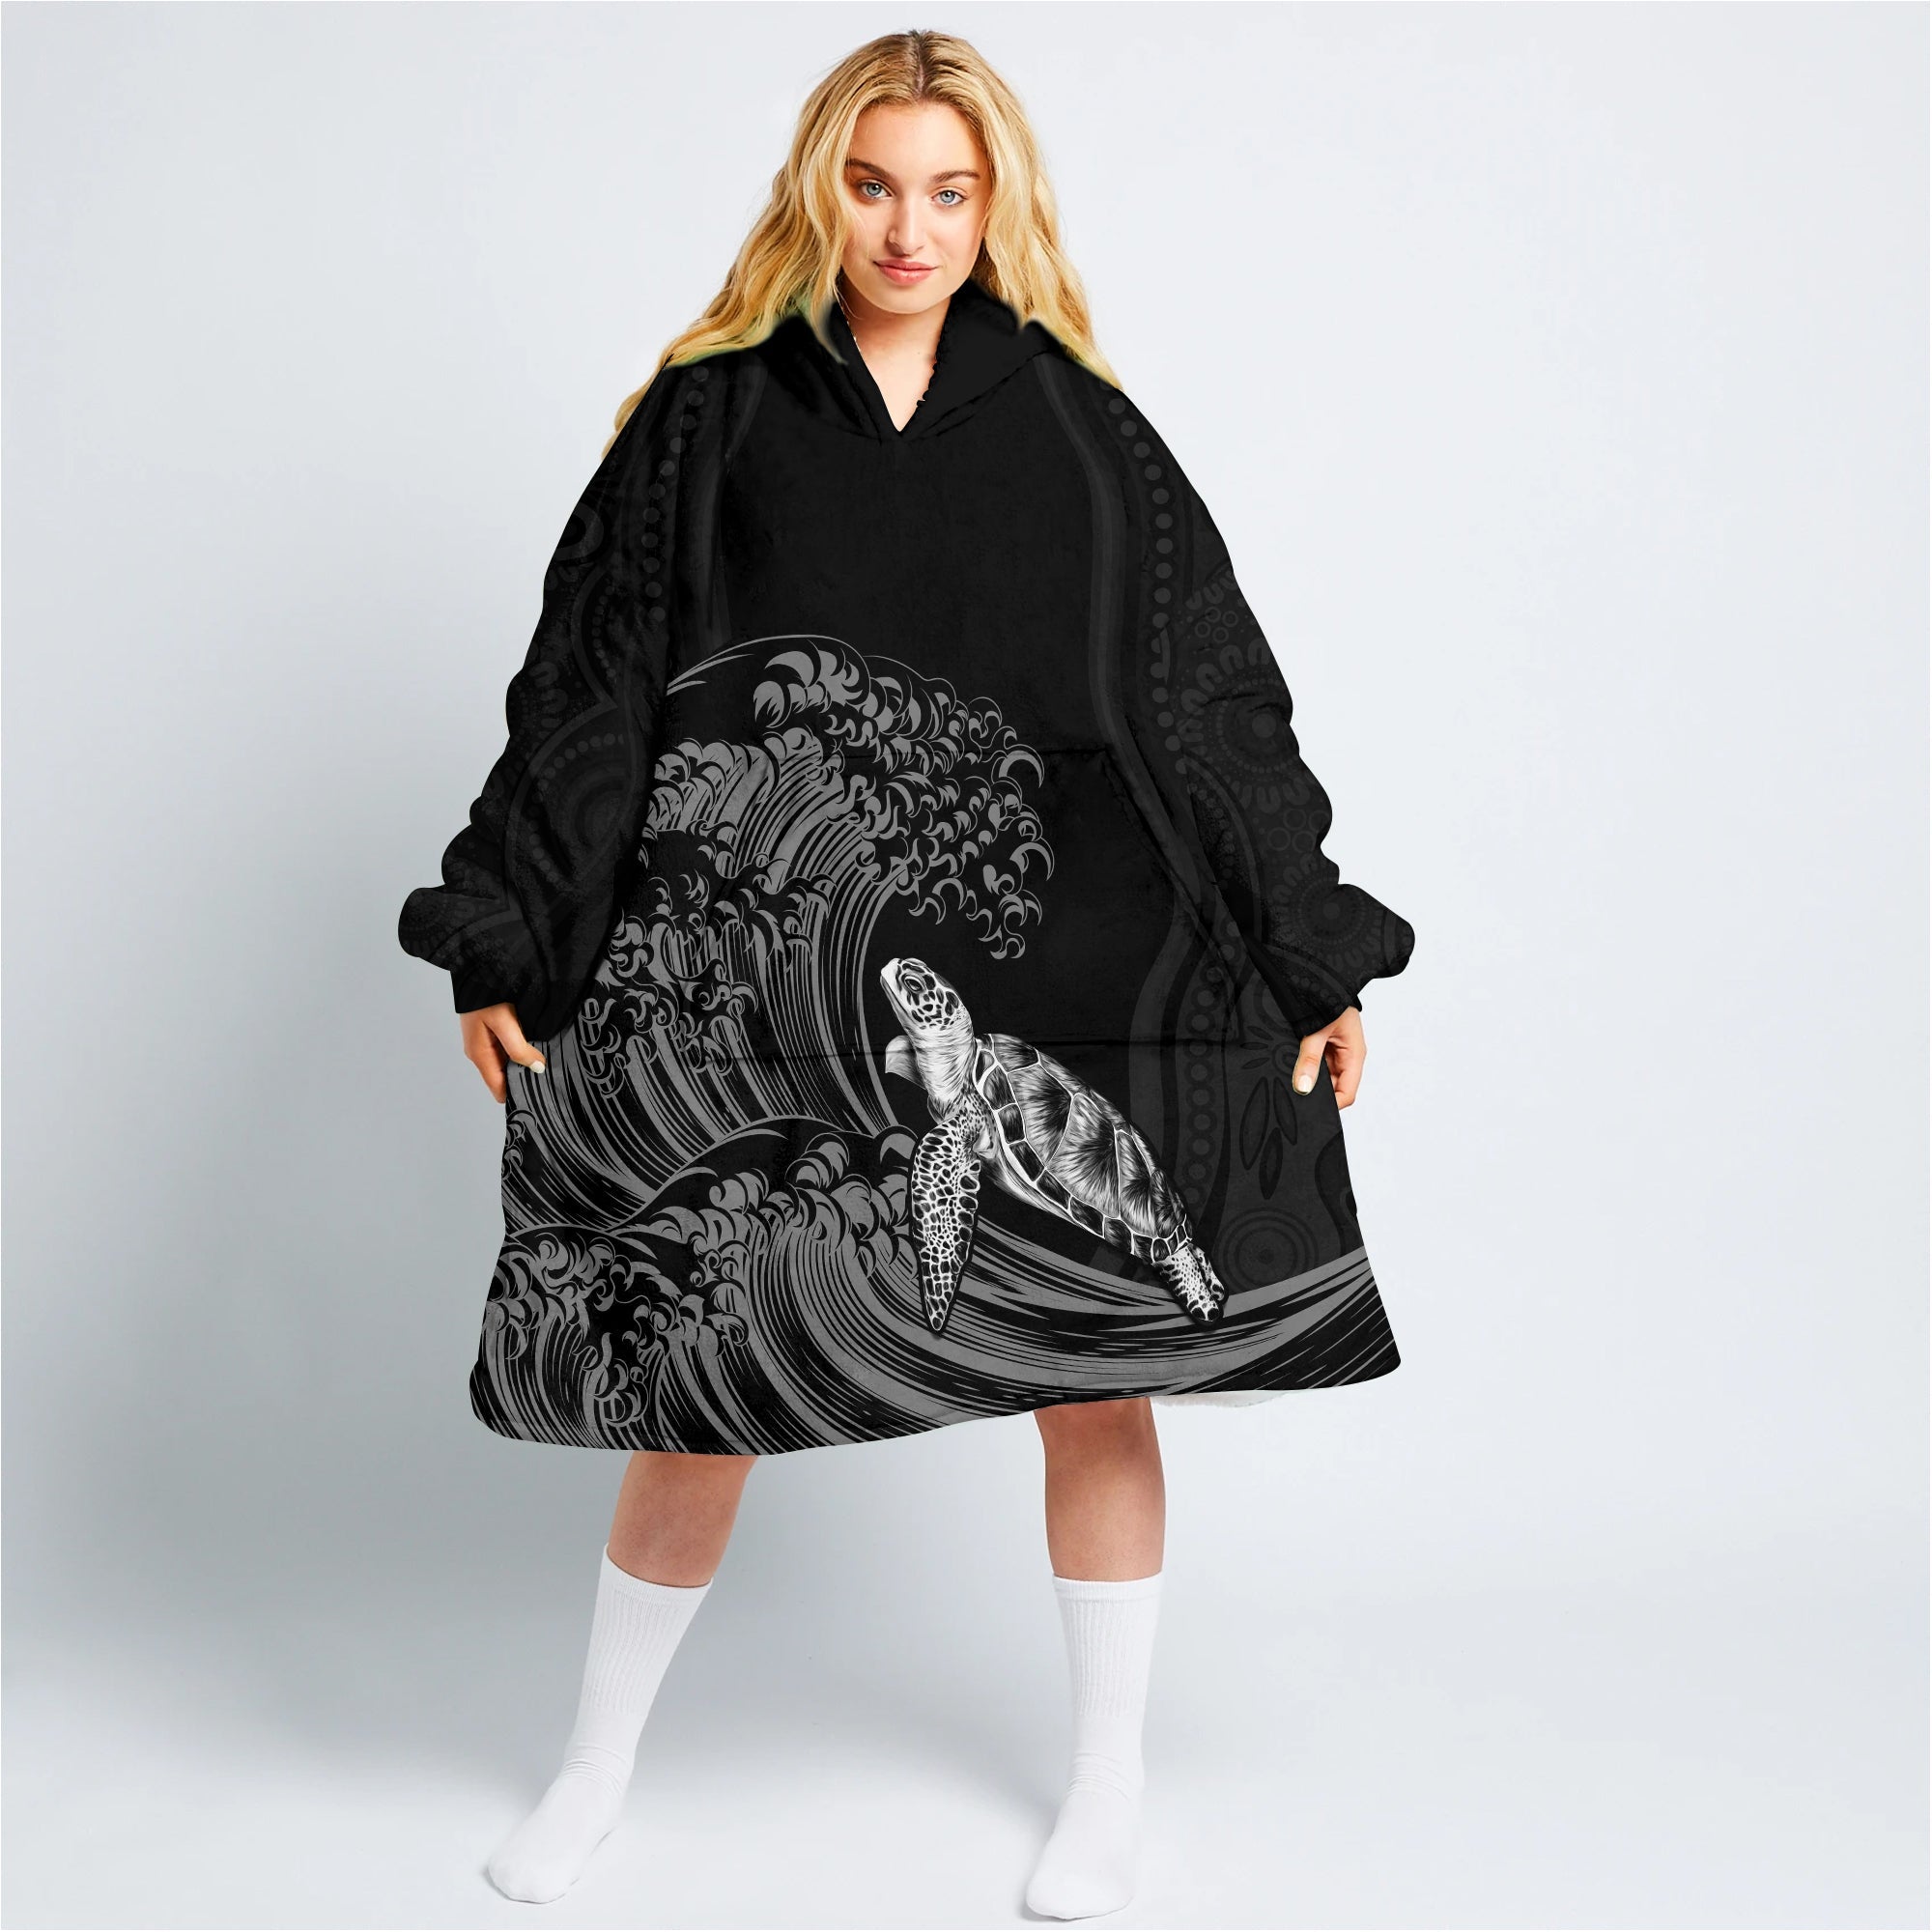 custom-personalised-torres-strait-islands-wearable-blanket-hoodie-the-dhari-mix-aboriginal-turtle-version-black